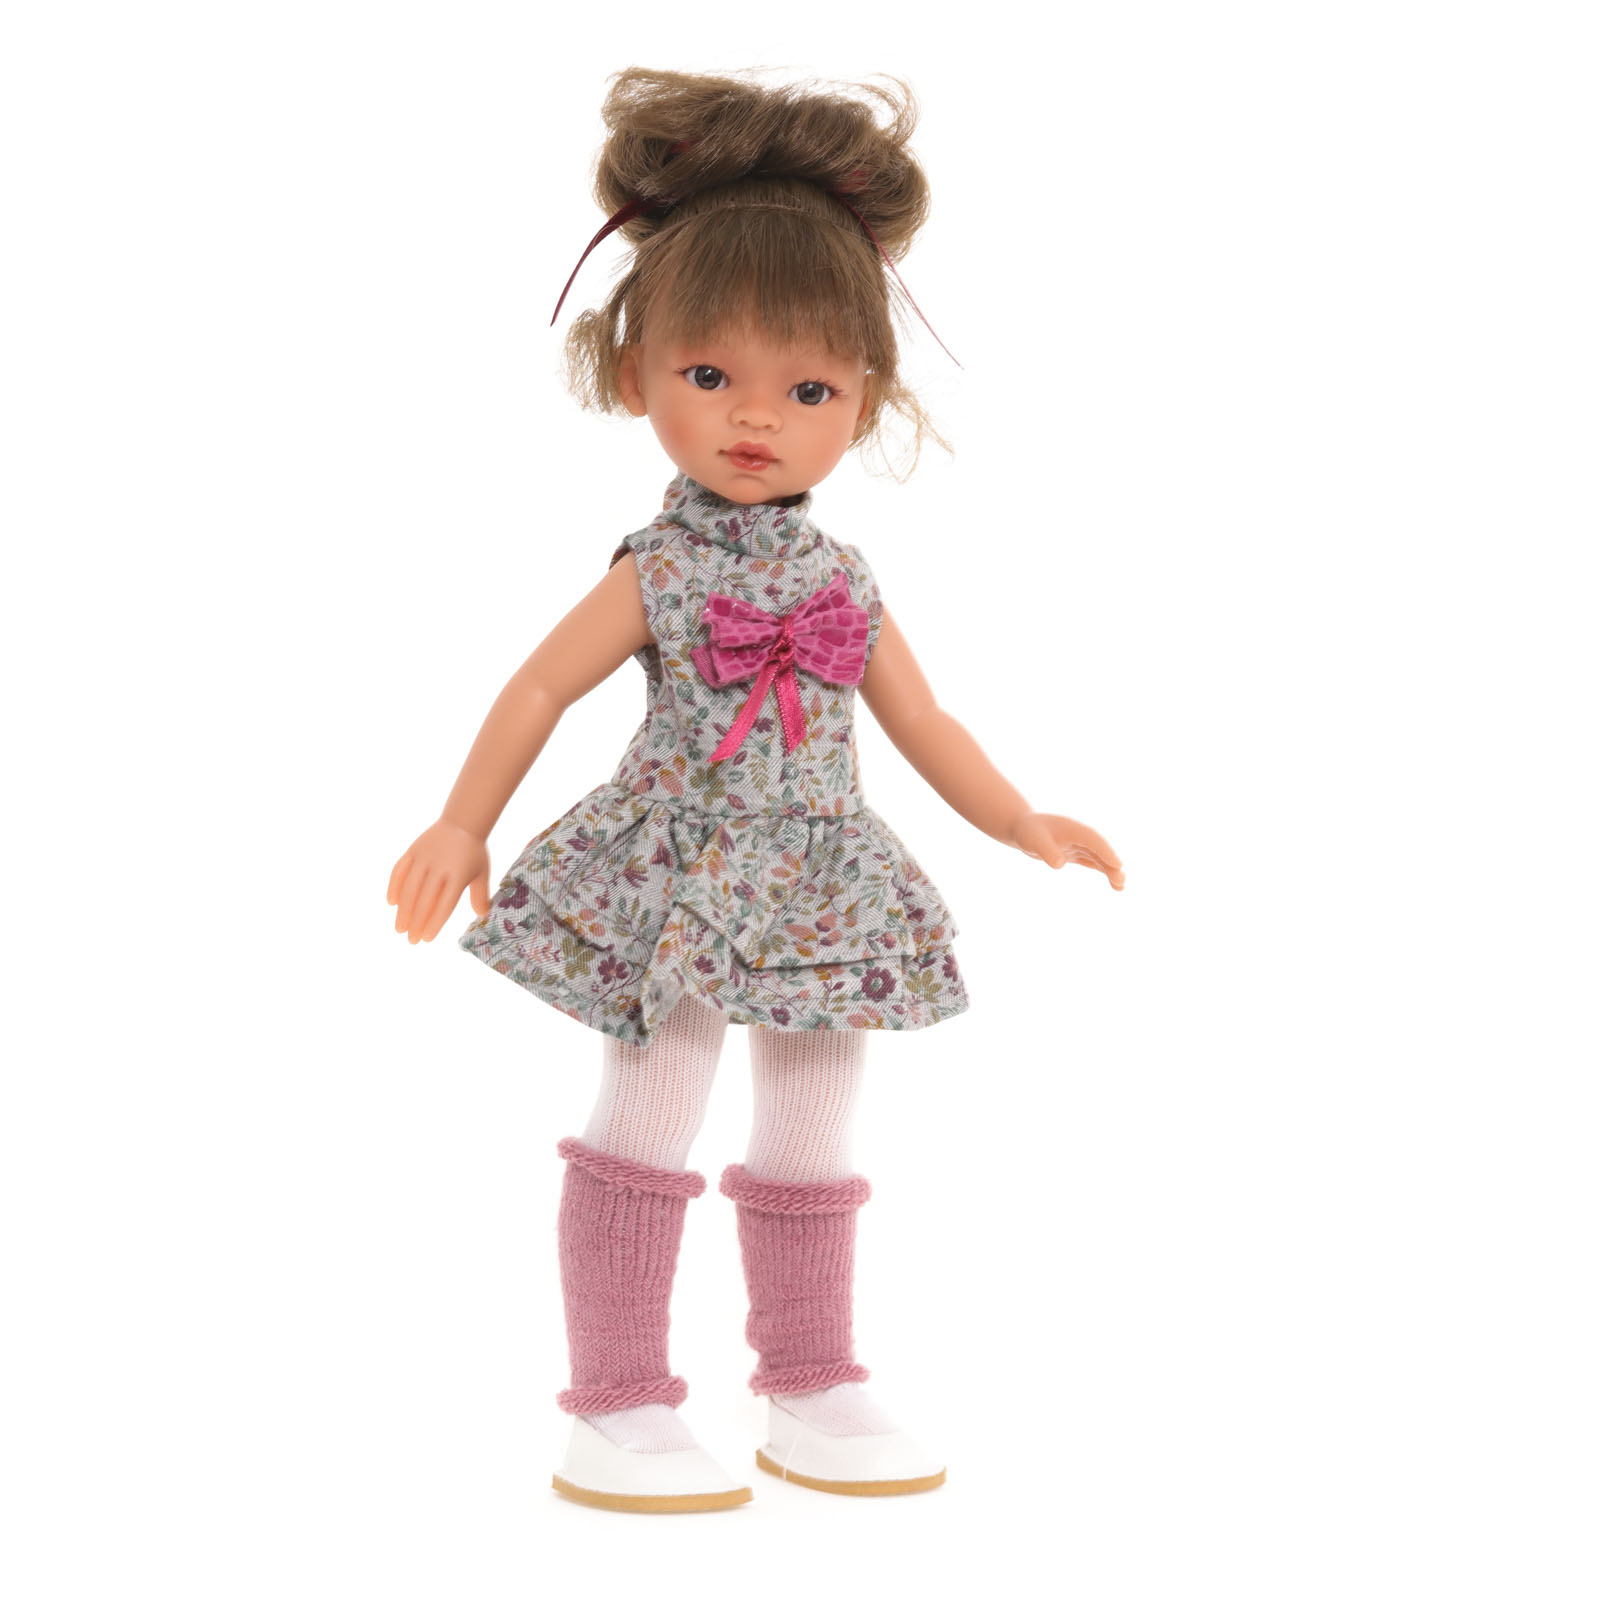 Кукла девочка Antonio Juan Ноа модный образ, 33 см, виниловая 25195 кукла девочка испанская antonio juan ирис в серо розовом 38 см виниловая 23308